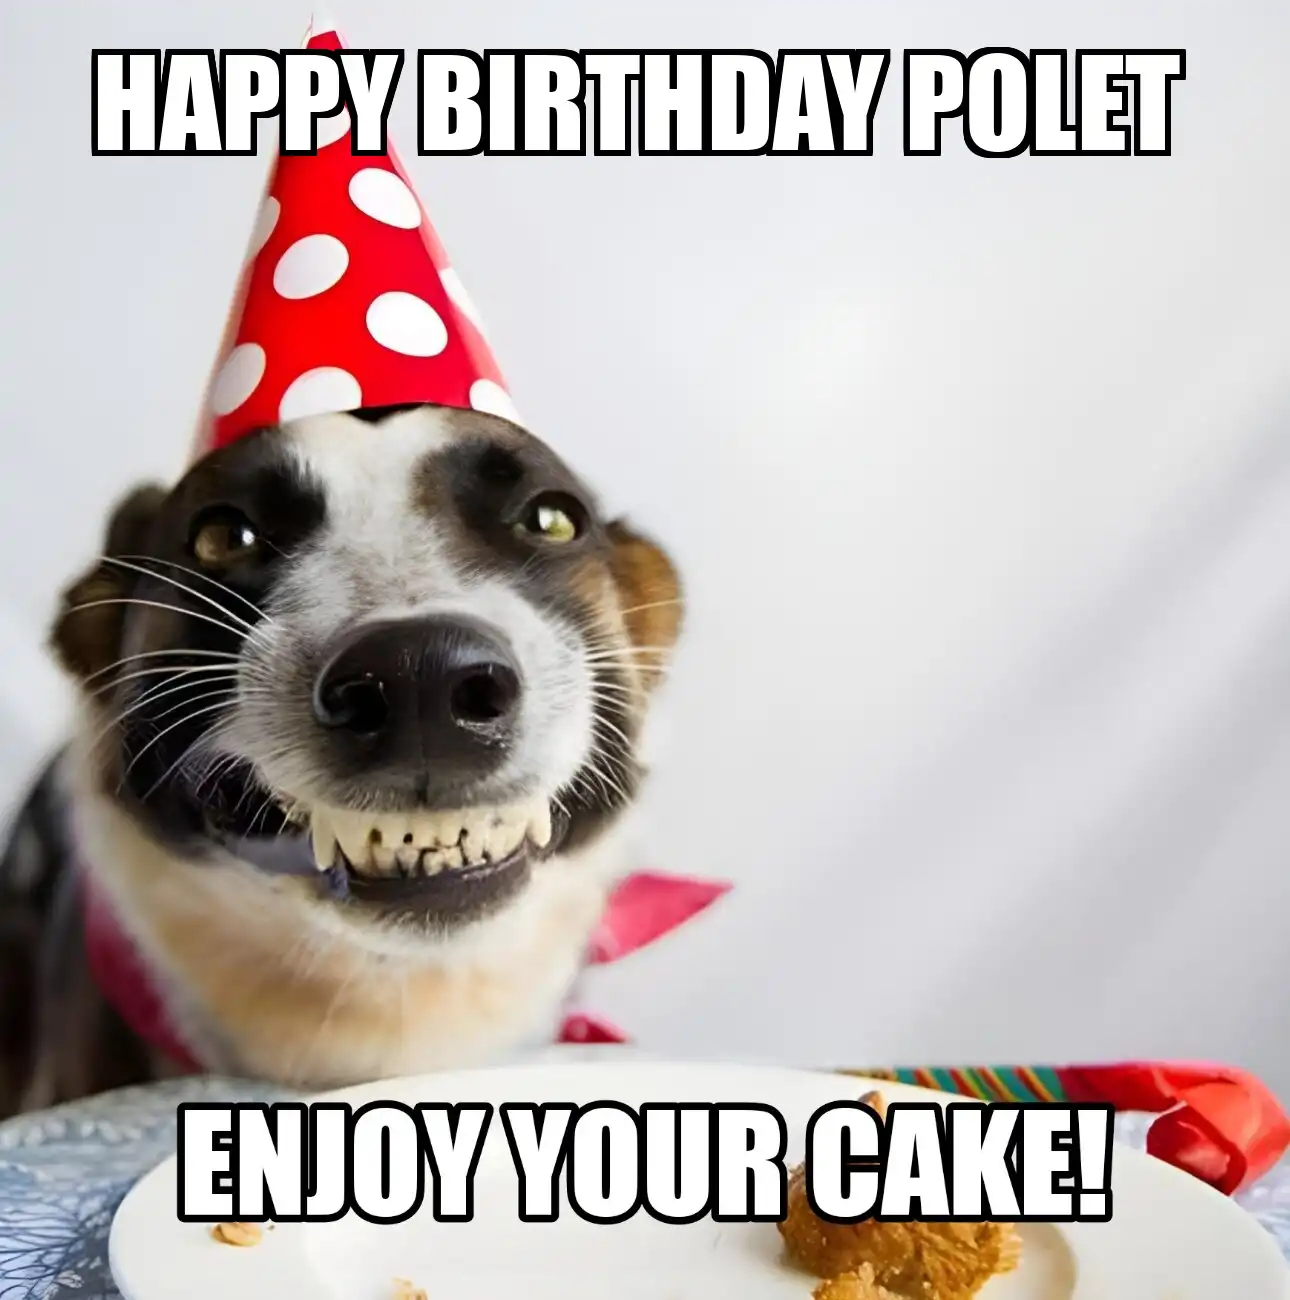 Happy Birthday Polet Enjoy Your Cake Dog Meme